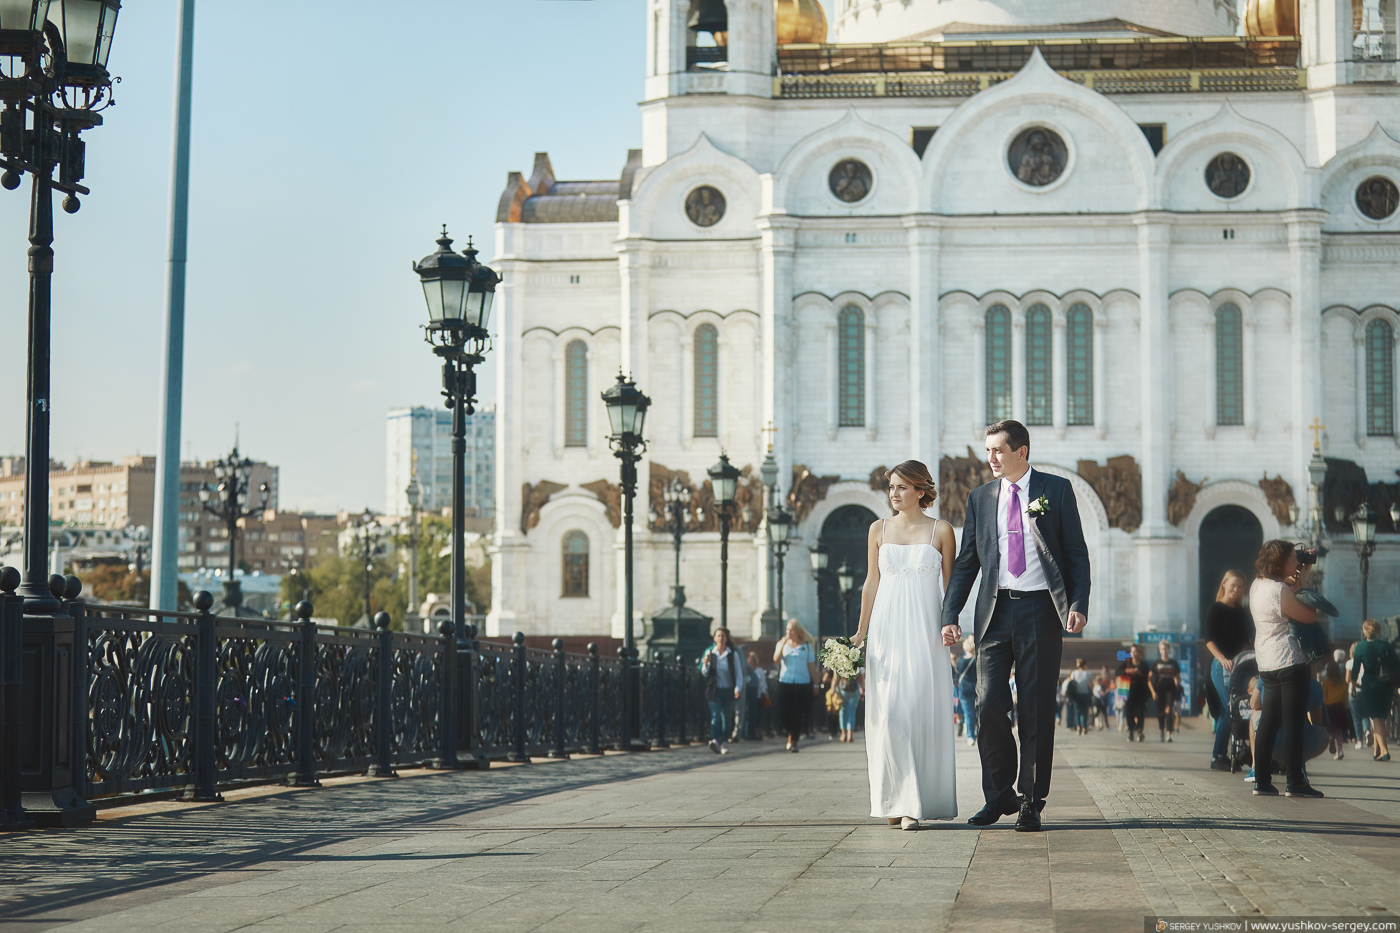 Красивая свадьба на двоих в Москве. Фотограф - Сергей Юшков.